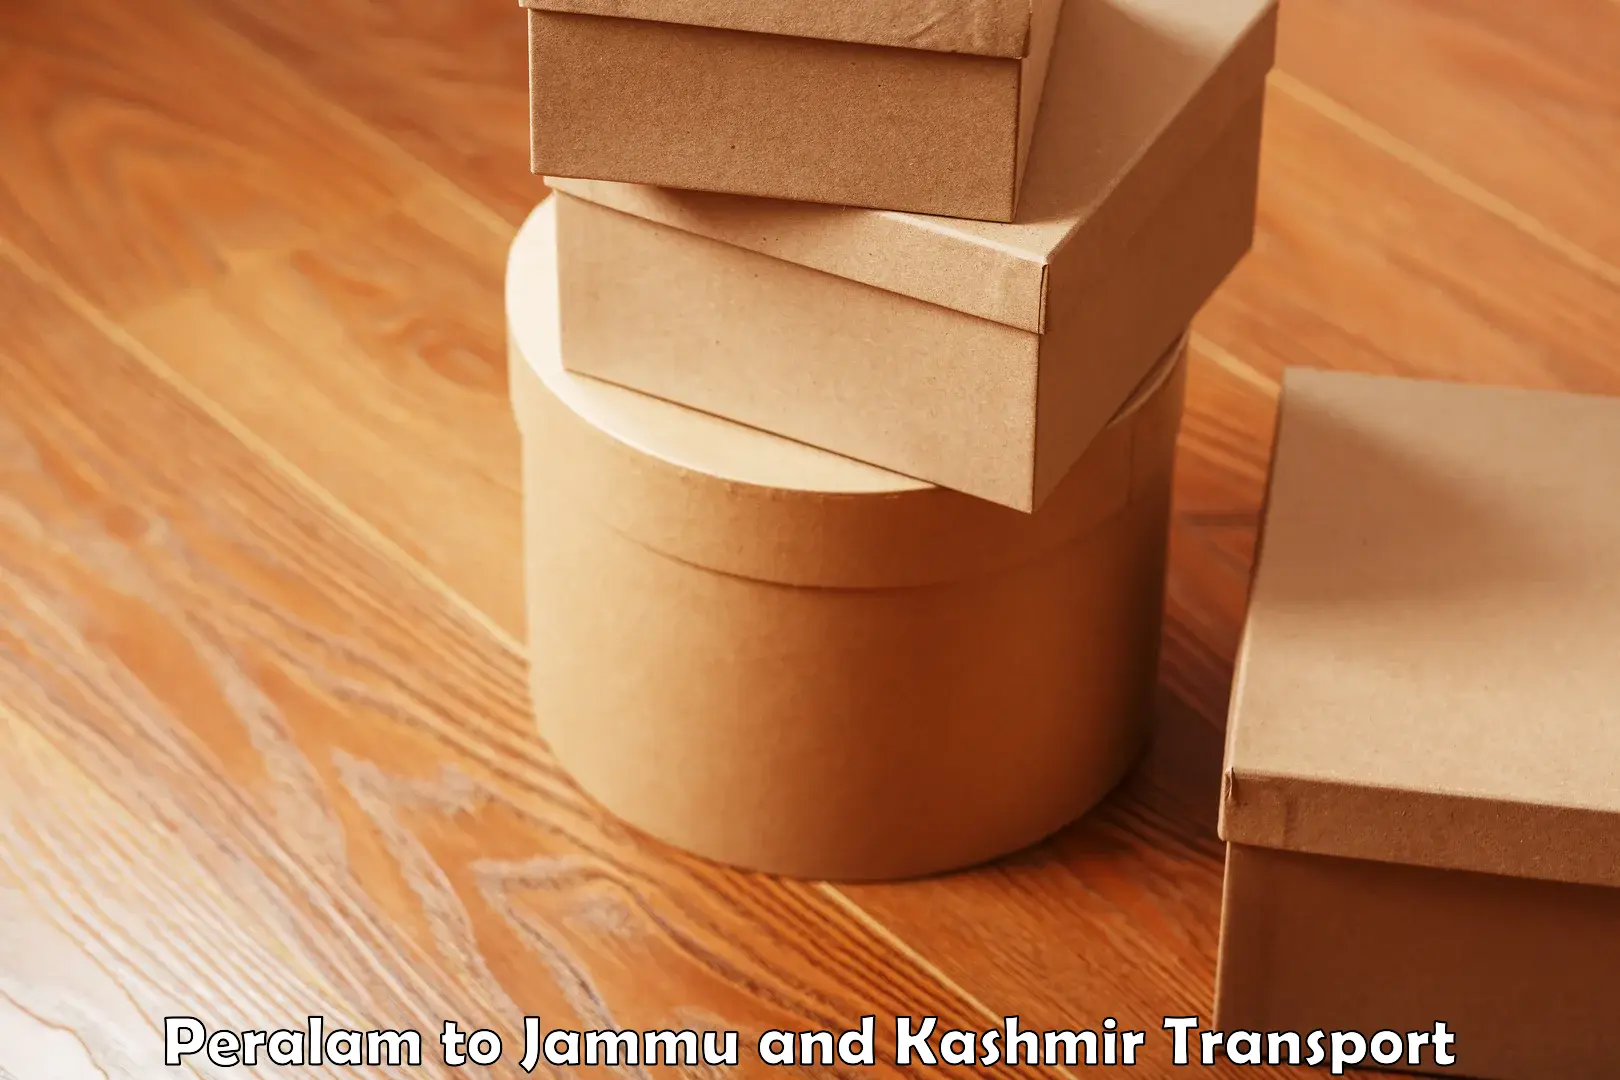 Furniture transport service Peralam to Ramban